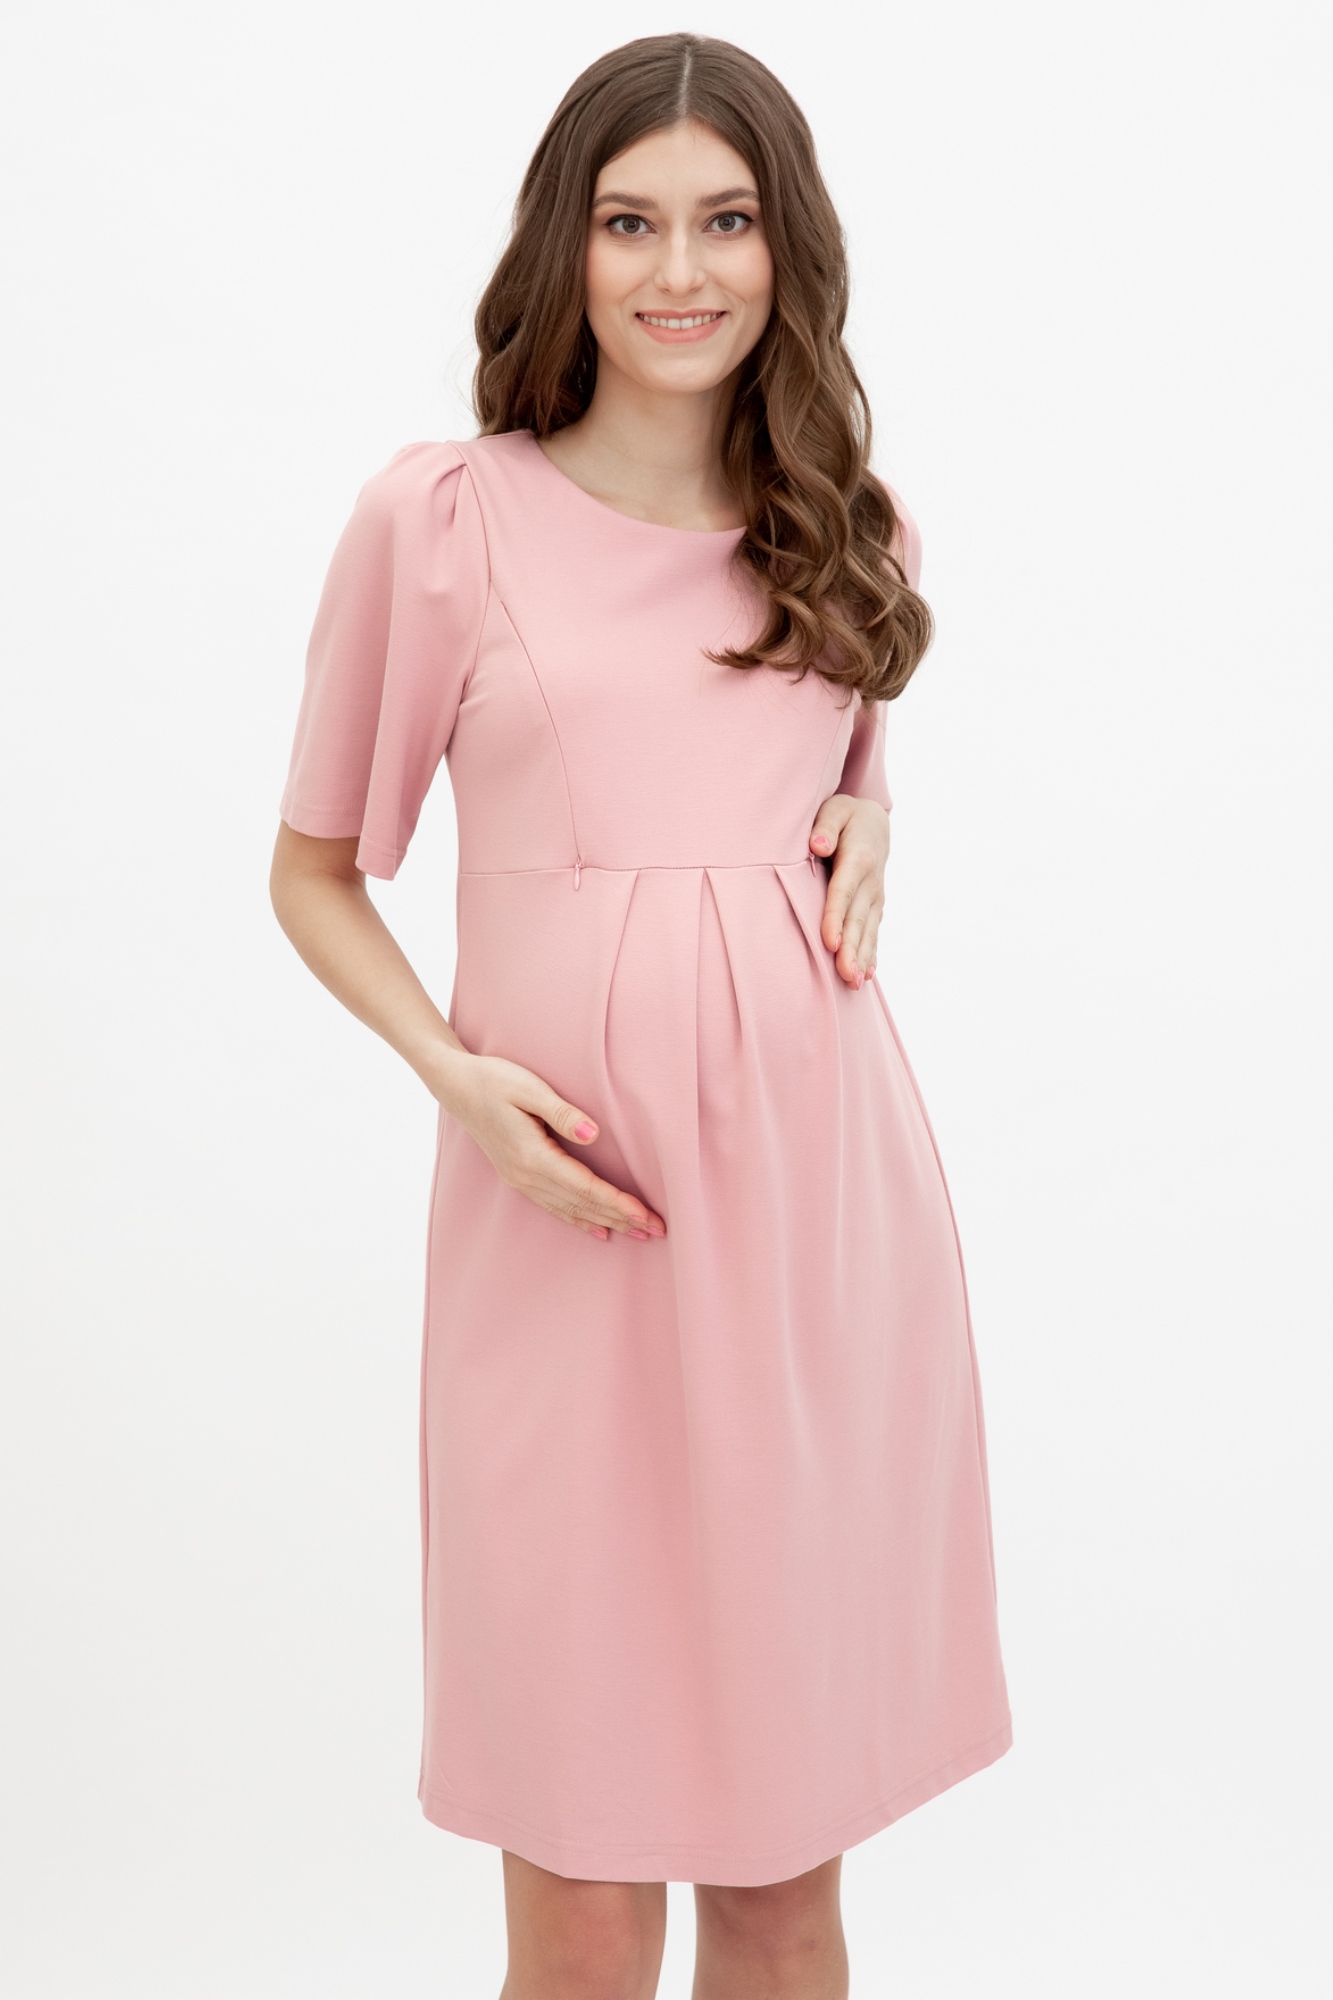 Платье для беременных женское Magica bellezza 0188 розовое 42 RU